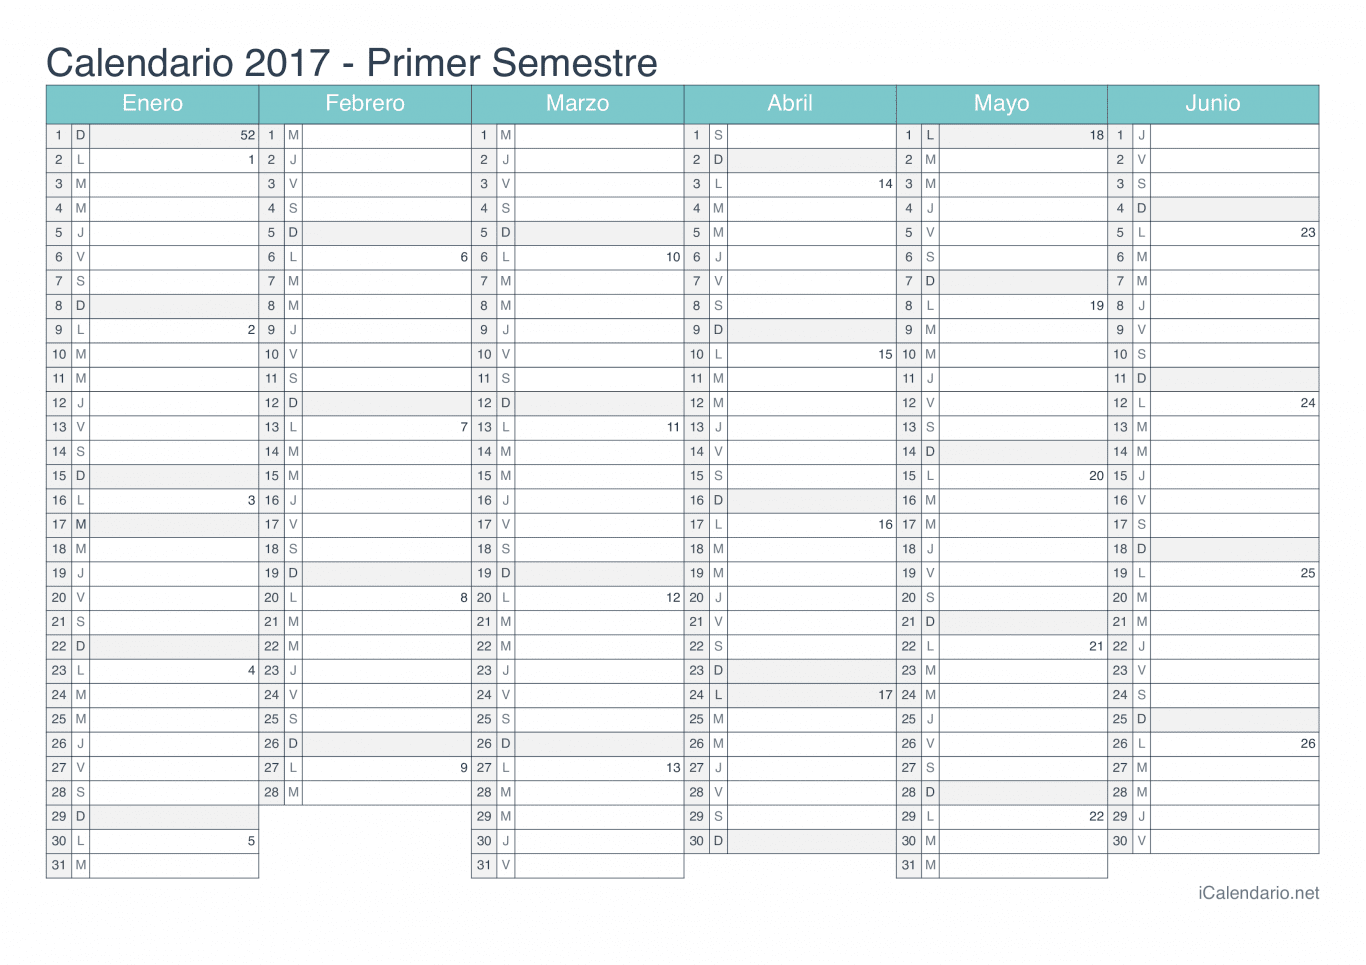 Calendario por semestre com números da semana 2017 - Turquesa